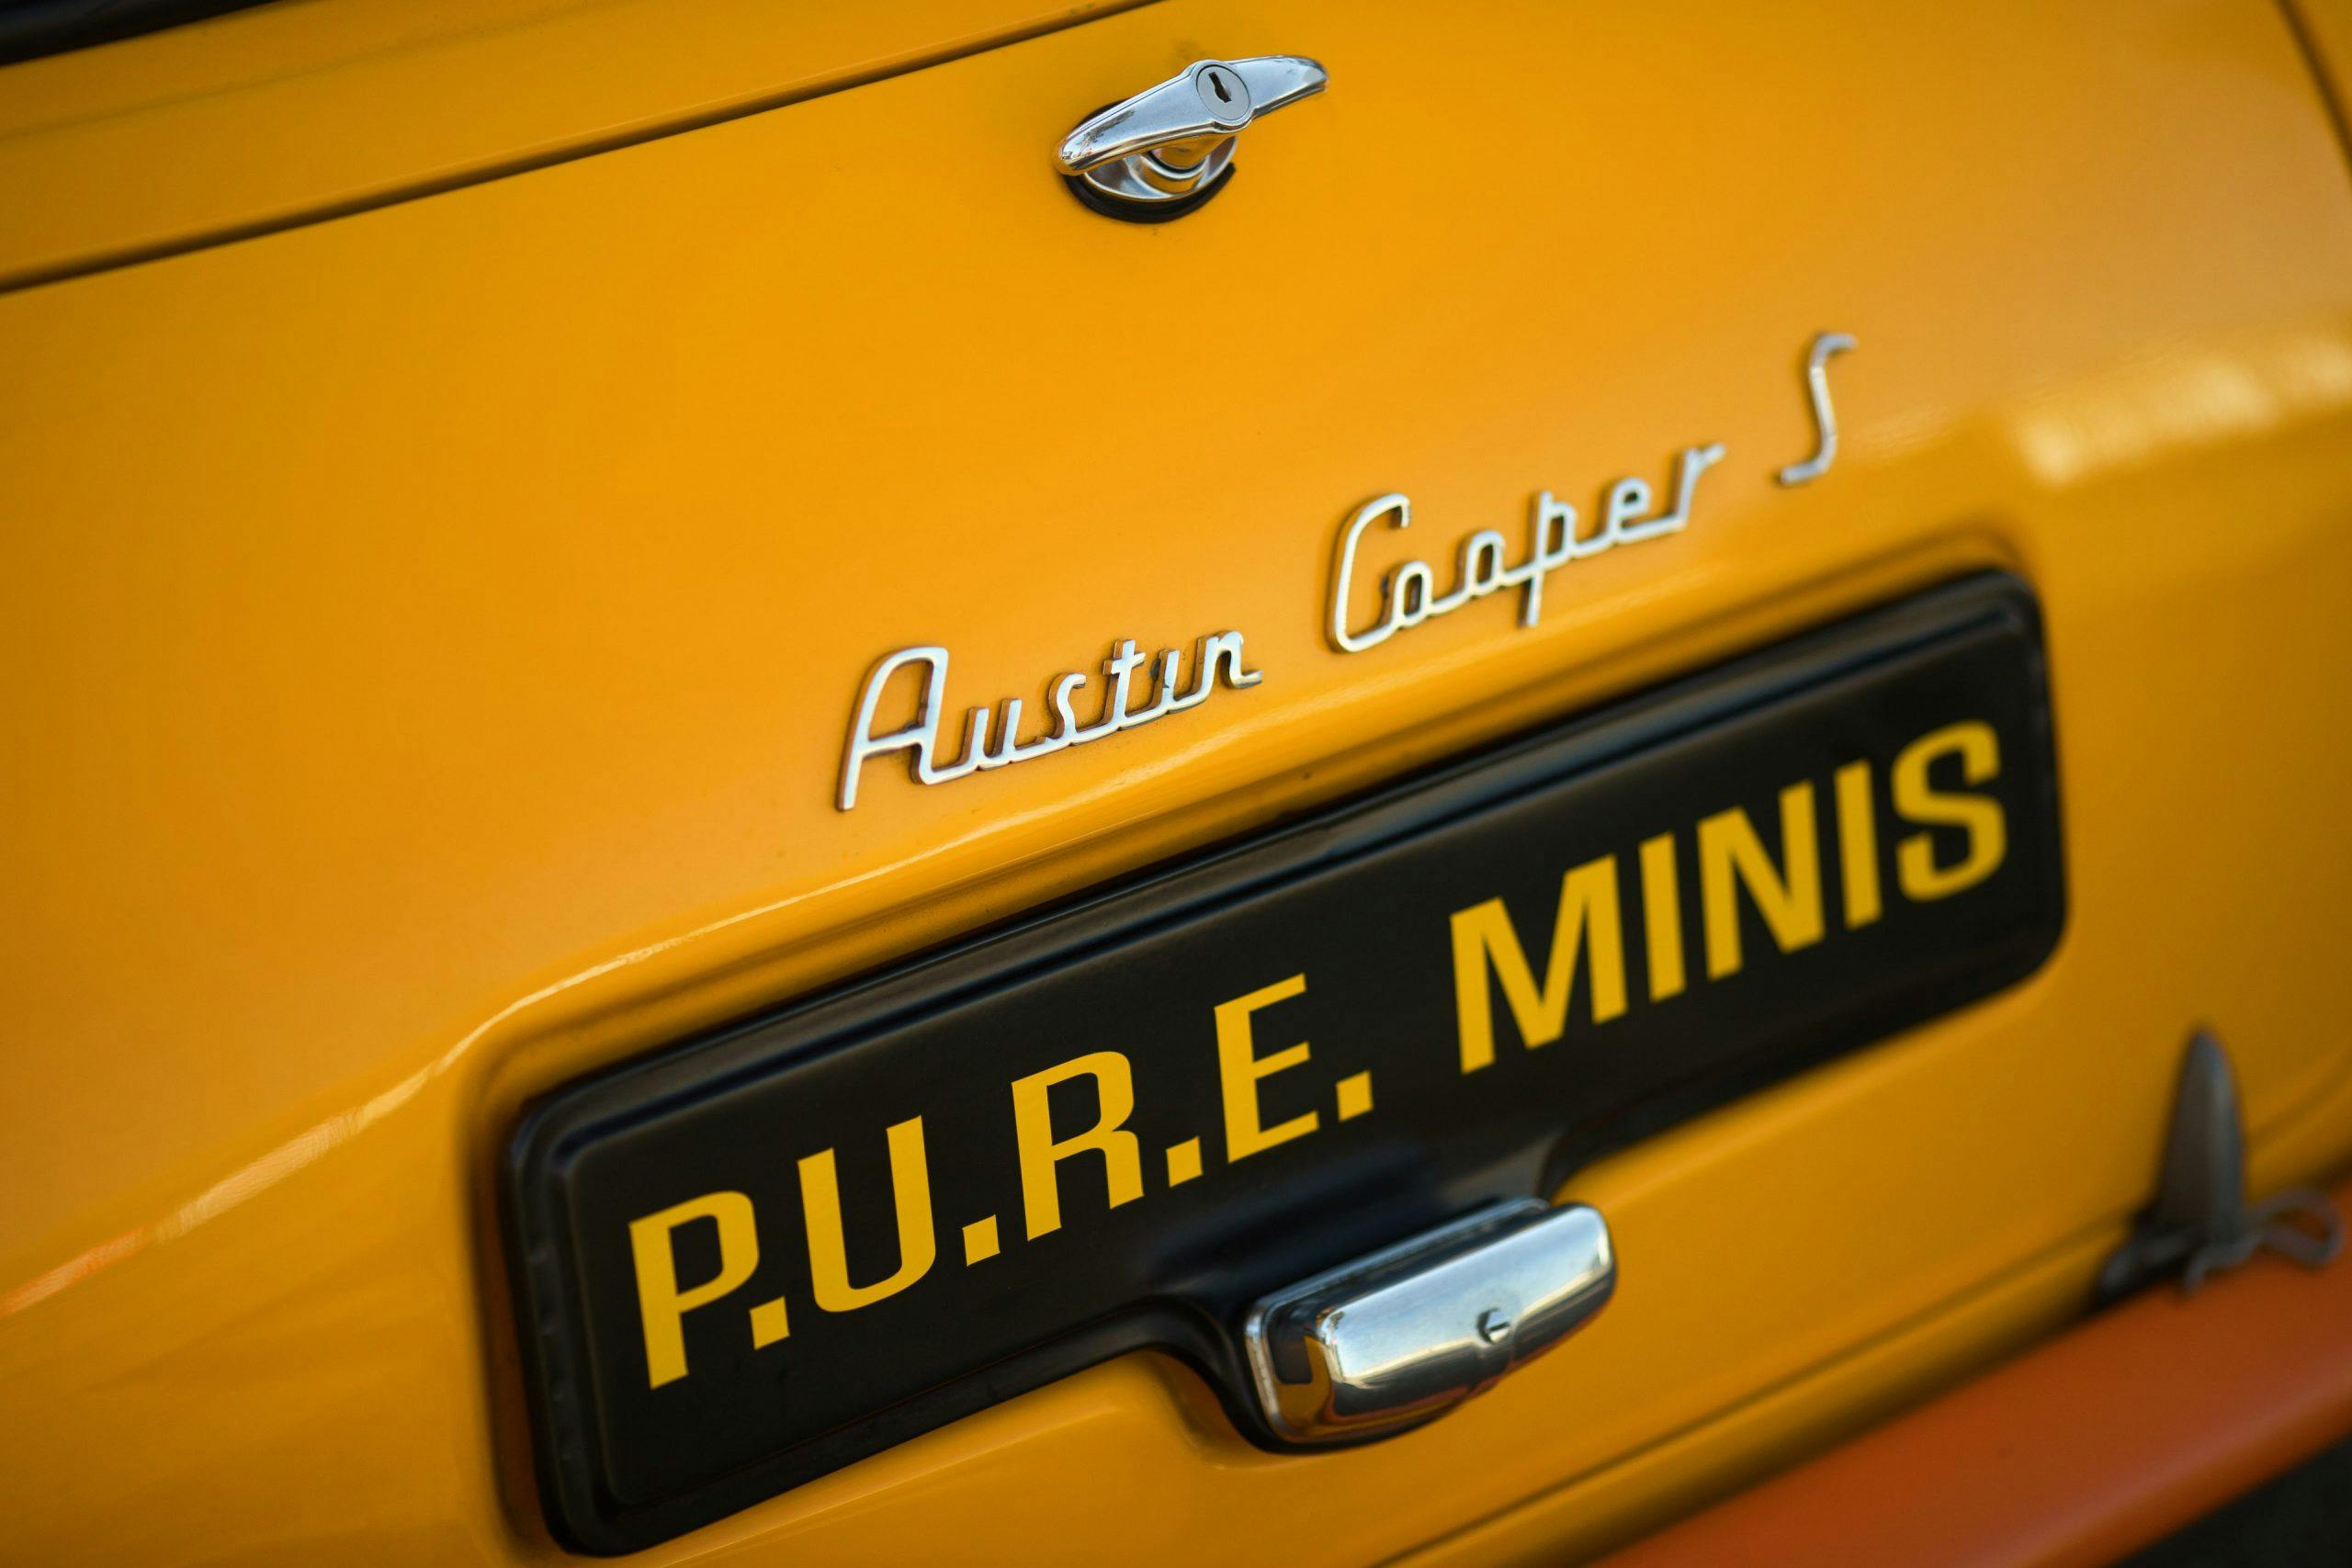 Austin Cooper S Mini badging